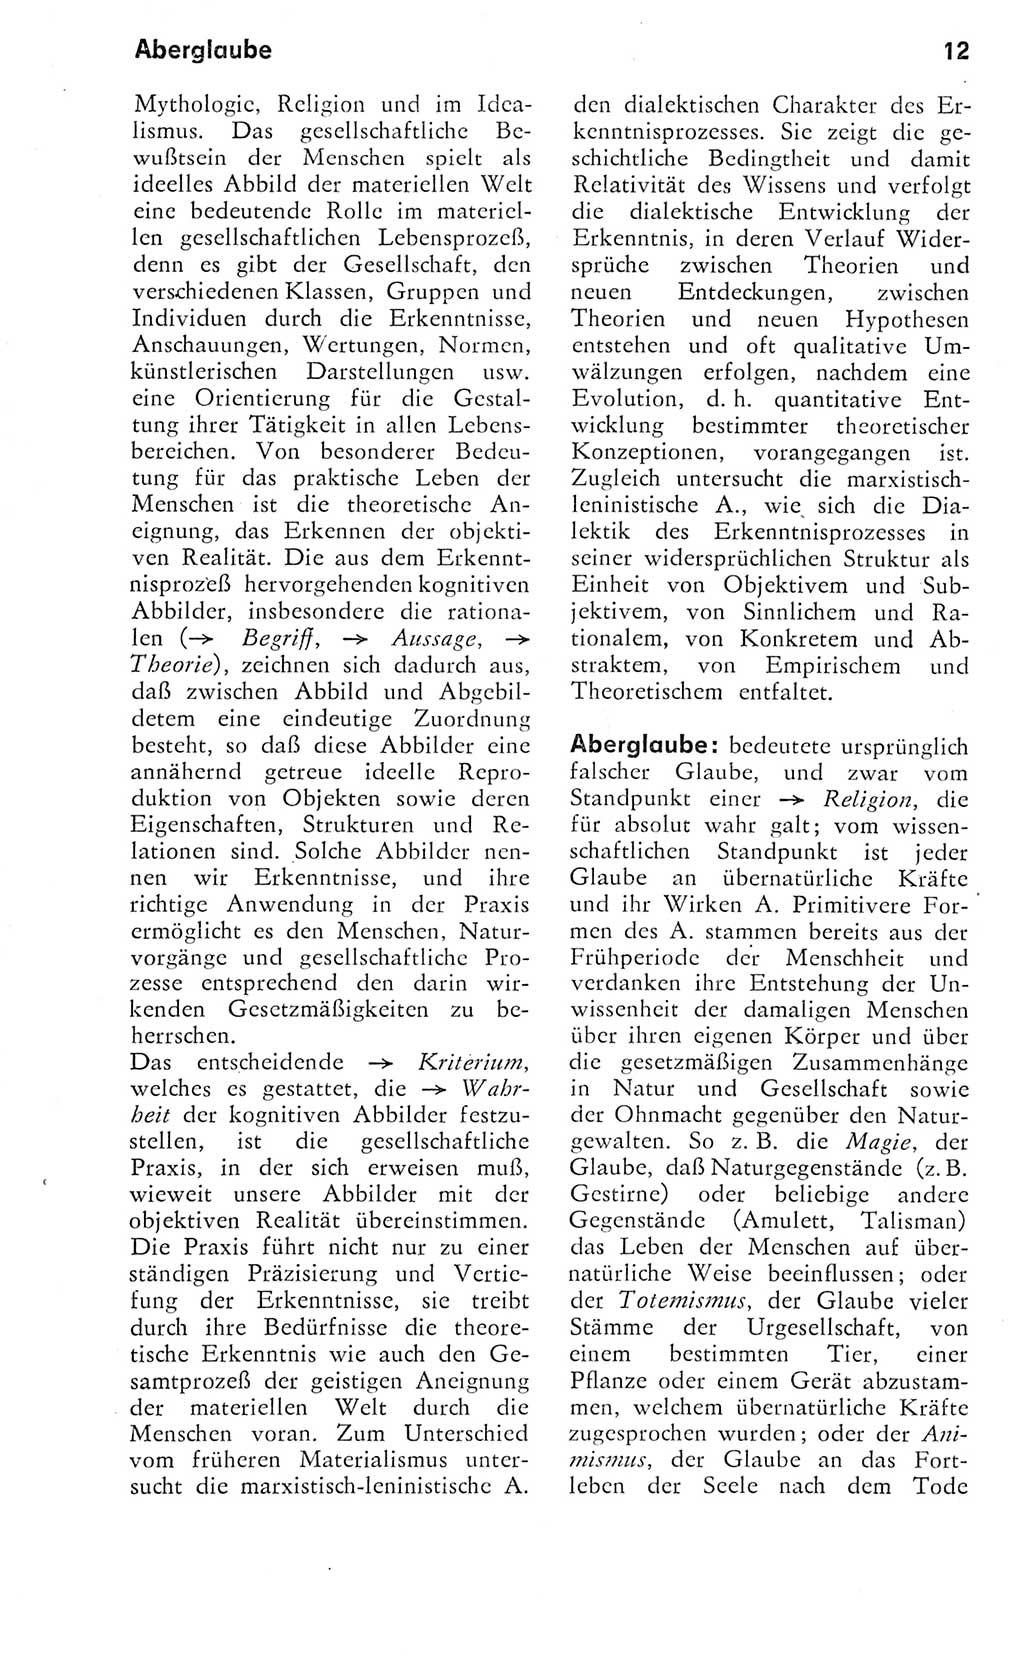 Kleines Wörterbuch der marxistisch-leninistischen Philosophie [Deutsche Demokratische Republik (DDR)] 1974, Seite 12 (Kl. Wb. ML Phil. DDR 1974, S. 12)